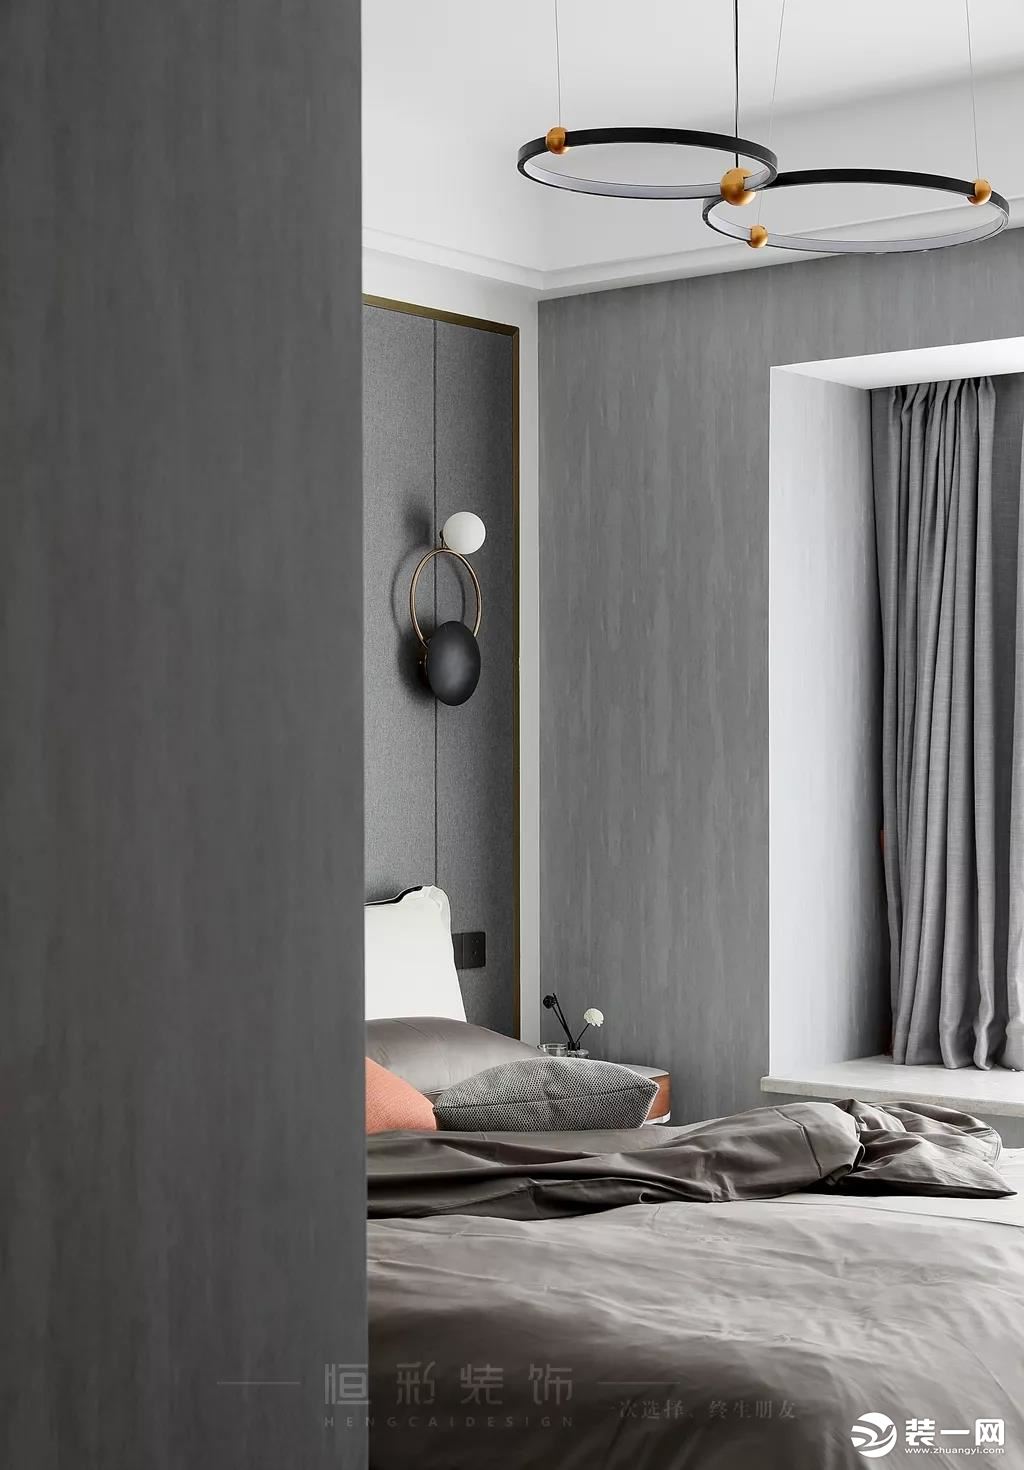 主卧空间一进门，一股清冽的高级感便扑面而来。整个灰色的背景，加上极简的软装陈设，通过色彩和质感，简单